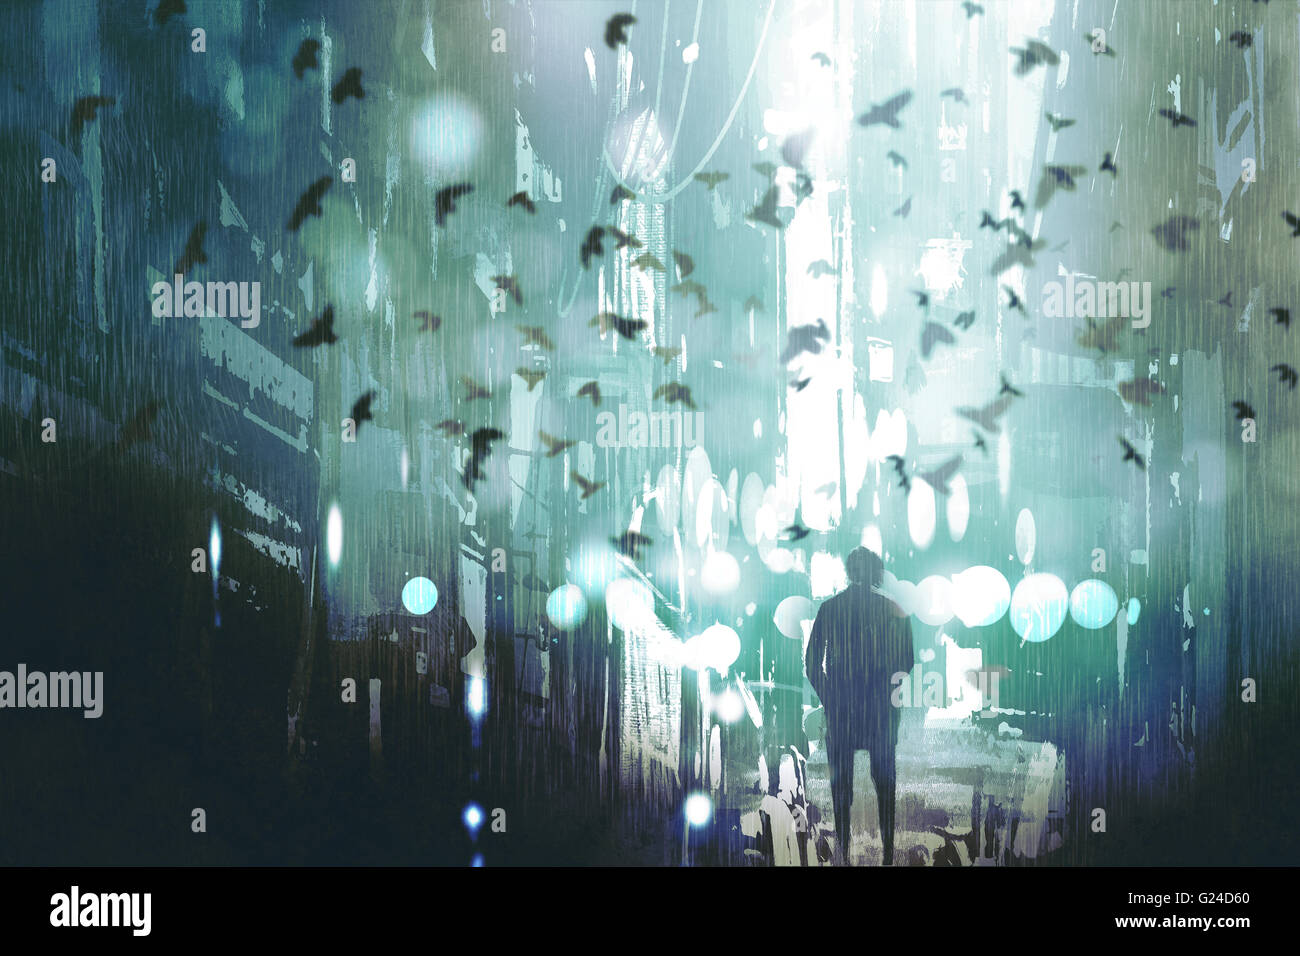 Mann zu Fuß in verlassenen Stadt Gasse mit Vogelschwarm, Illustration, Malerei Stockfoto